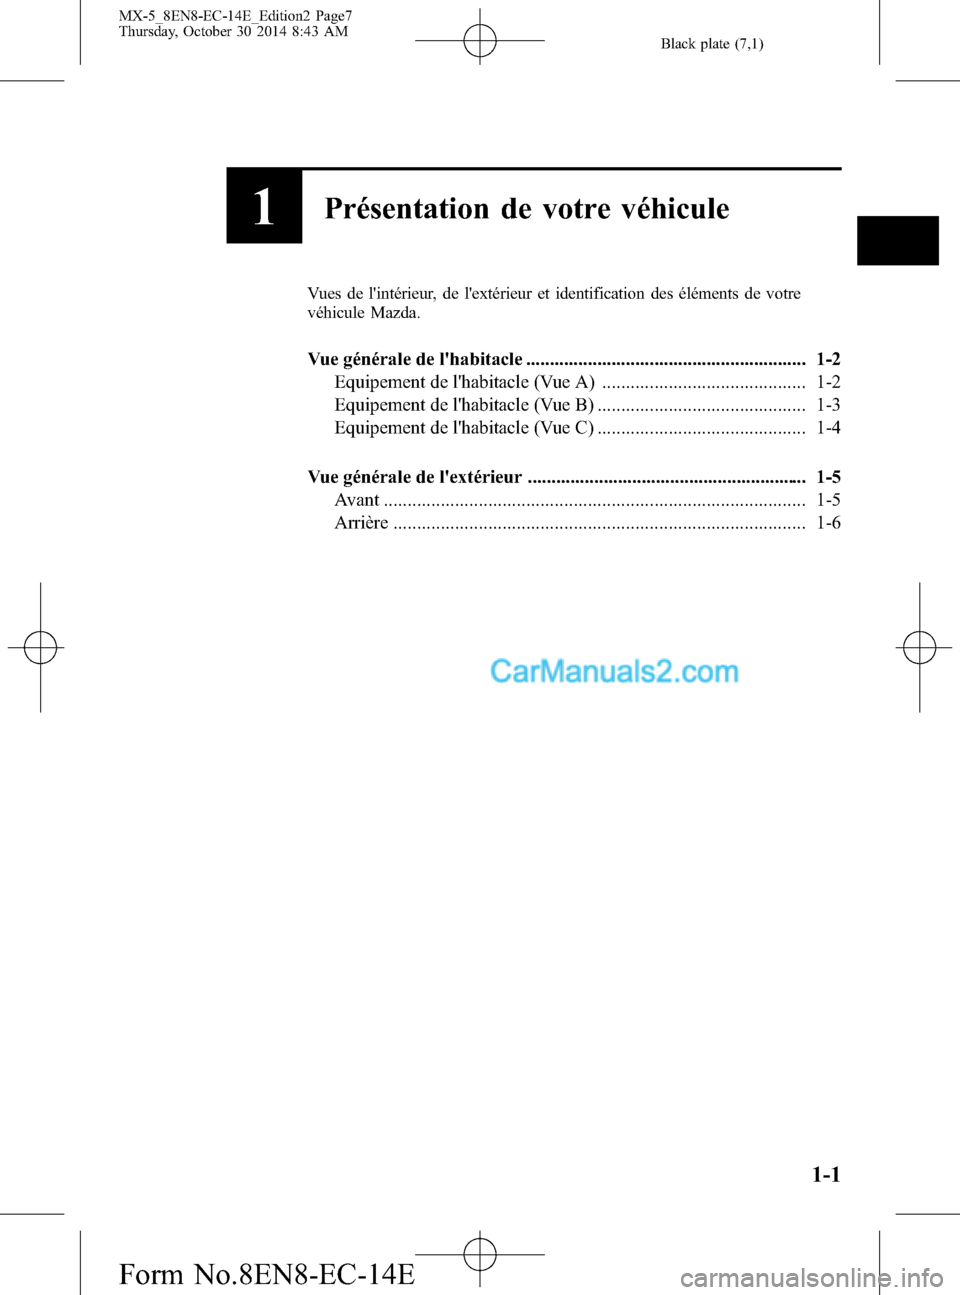 MAZDA MODEL MX-5 2015  Manuel du propriétaire (in French) Black plate (7,1)
1Présentation de votre véhicule
Vues de lintérieur, de lextérieur et identification des éléments de votre
véhicule Mazda.
Vue générale de lhabitacle .....................